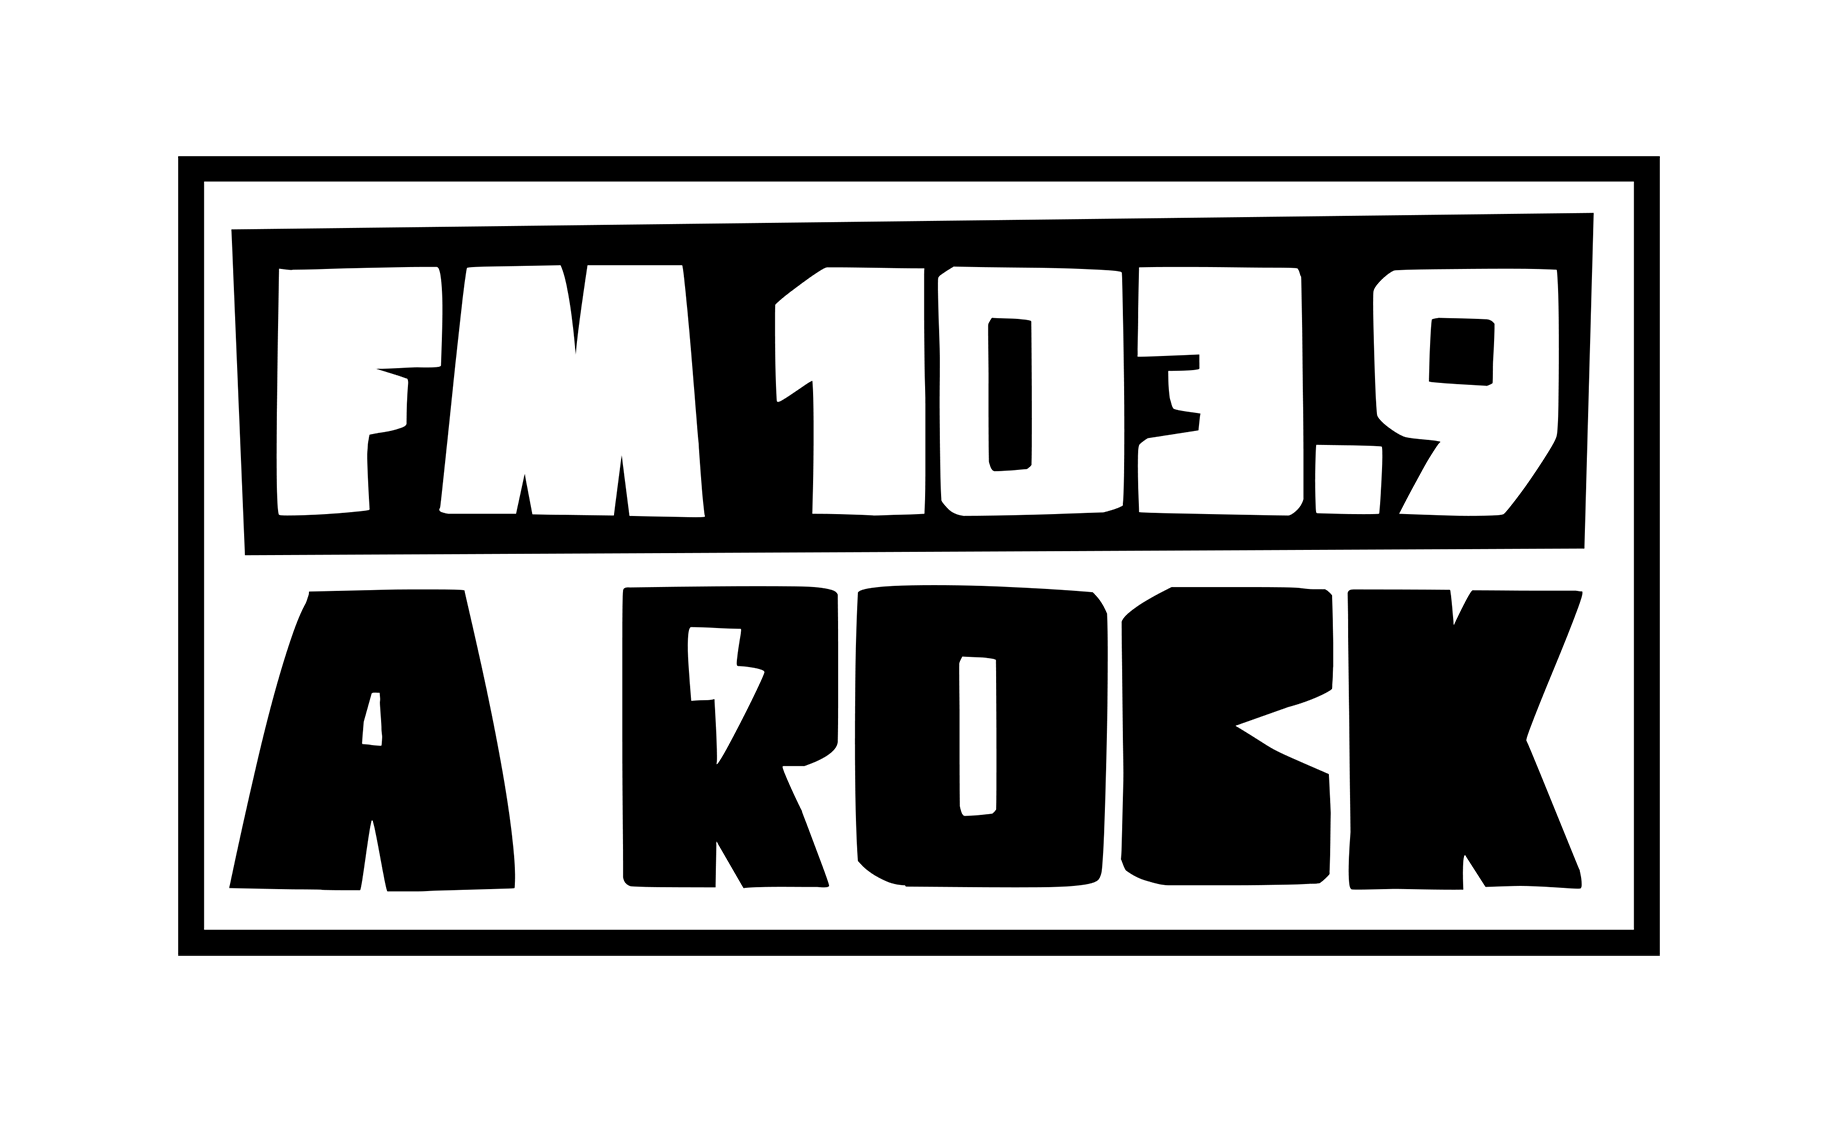 FM 103.9 A Rock